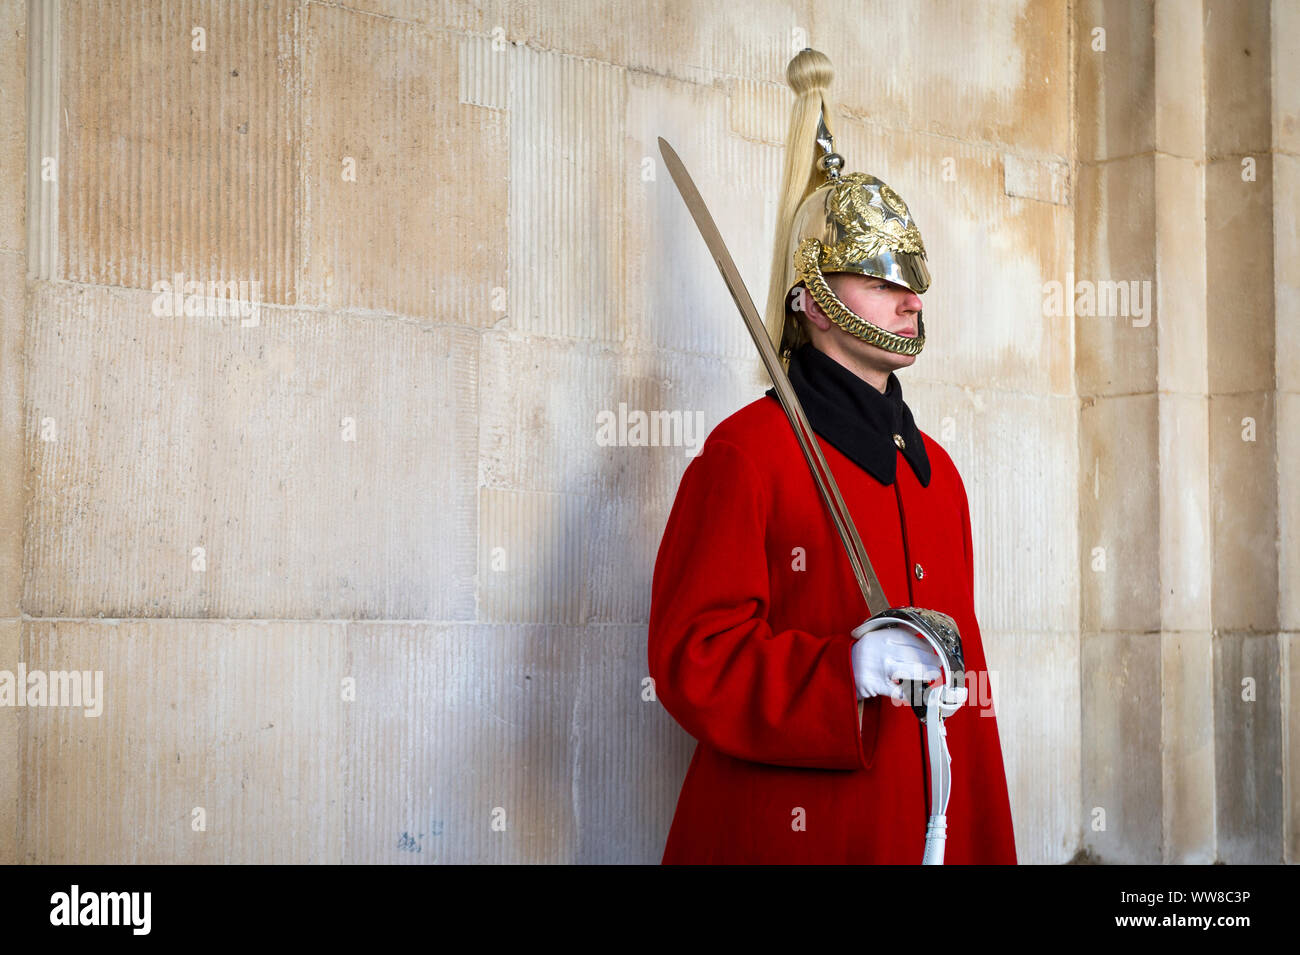 LONDON - 31. Oktober 2016: Eine junge Königin Life Guard in voller Uniform mit Royal Red Coat und goldenen Helm steht an Aufmerksamkeit mit einem Schwert. Stockfoto